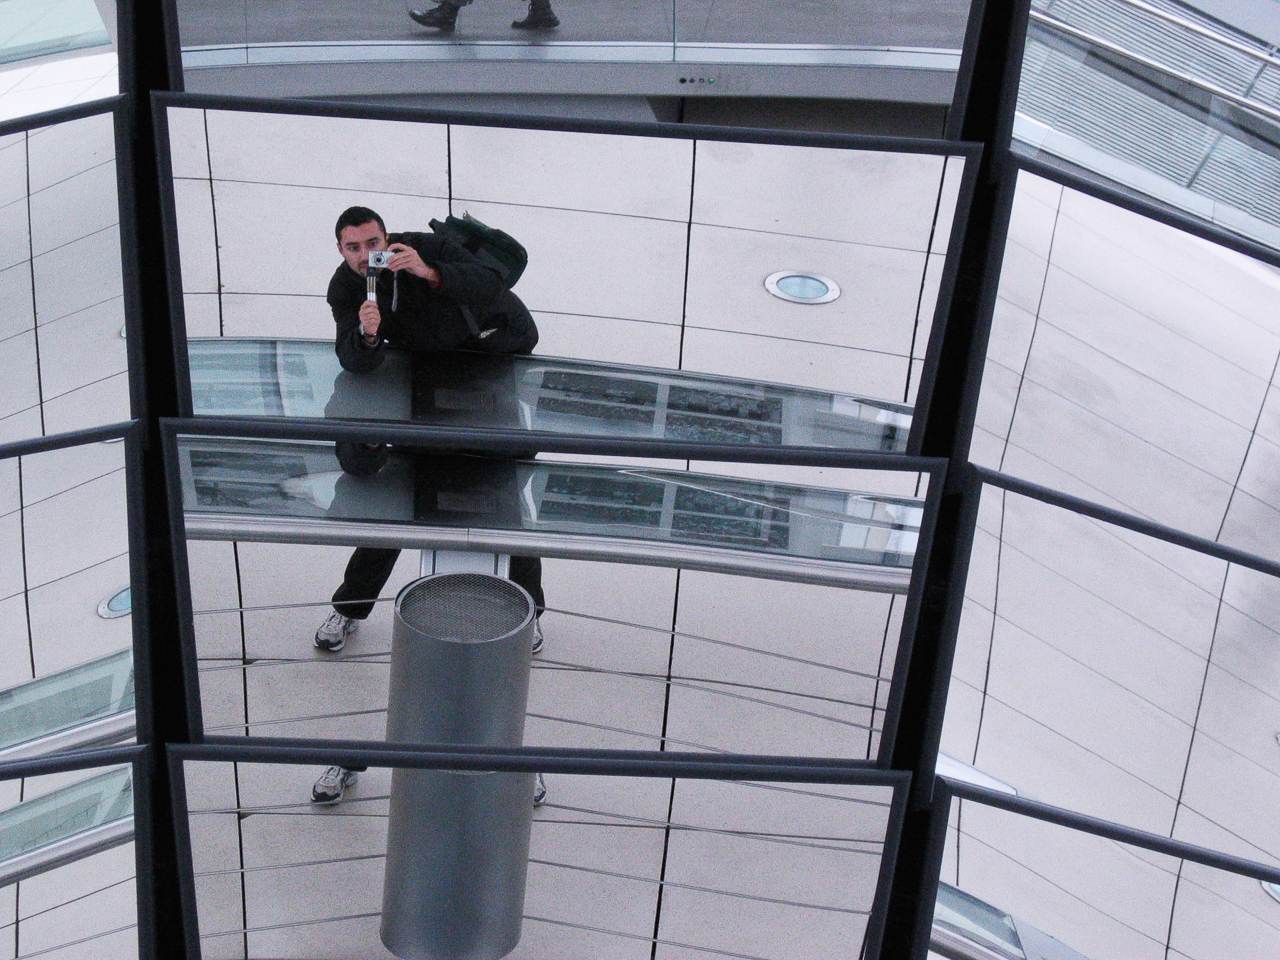 Selfie in the mirror [Reichstag]